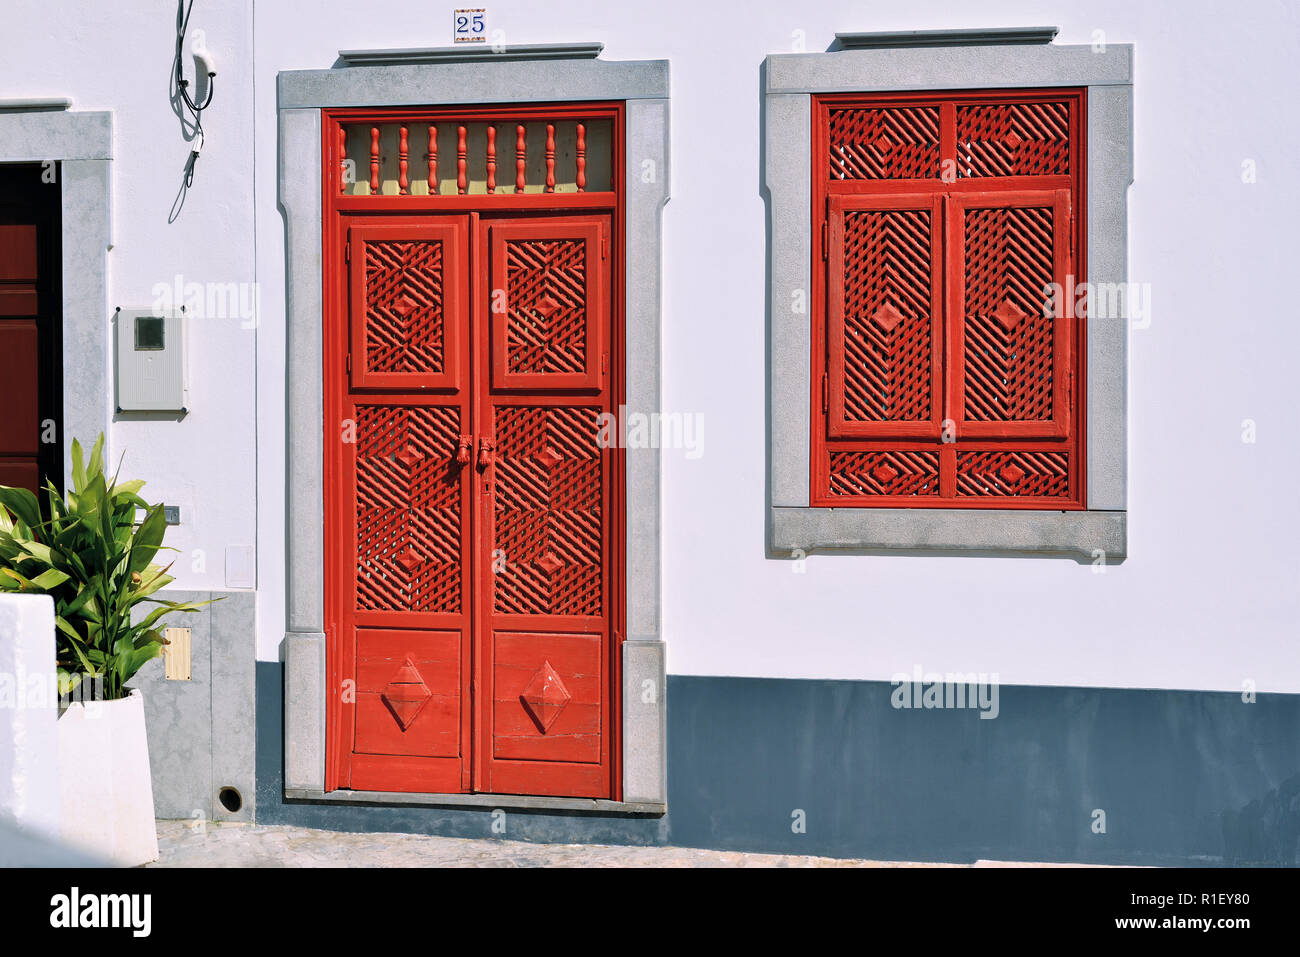 Mit der roten Tür und Fenster im traditionellen arabischen Stil mit verschiedenen Spaltungen in der vor kurzem restaurierten kleinen Haus Stockfoto